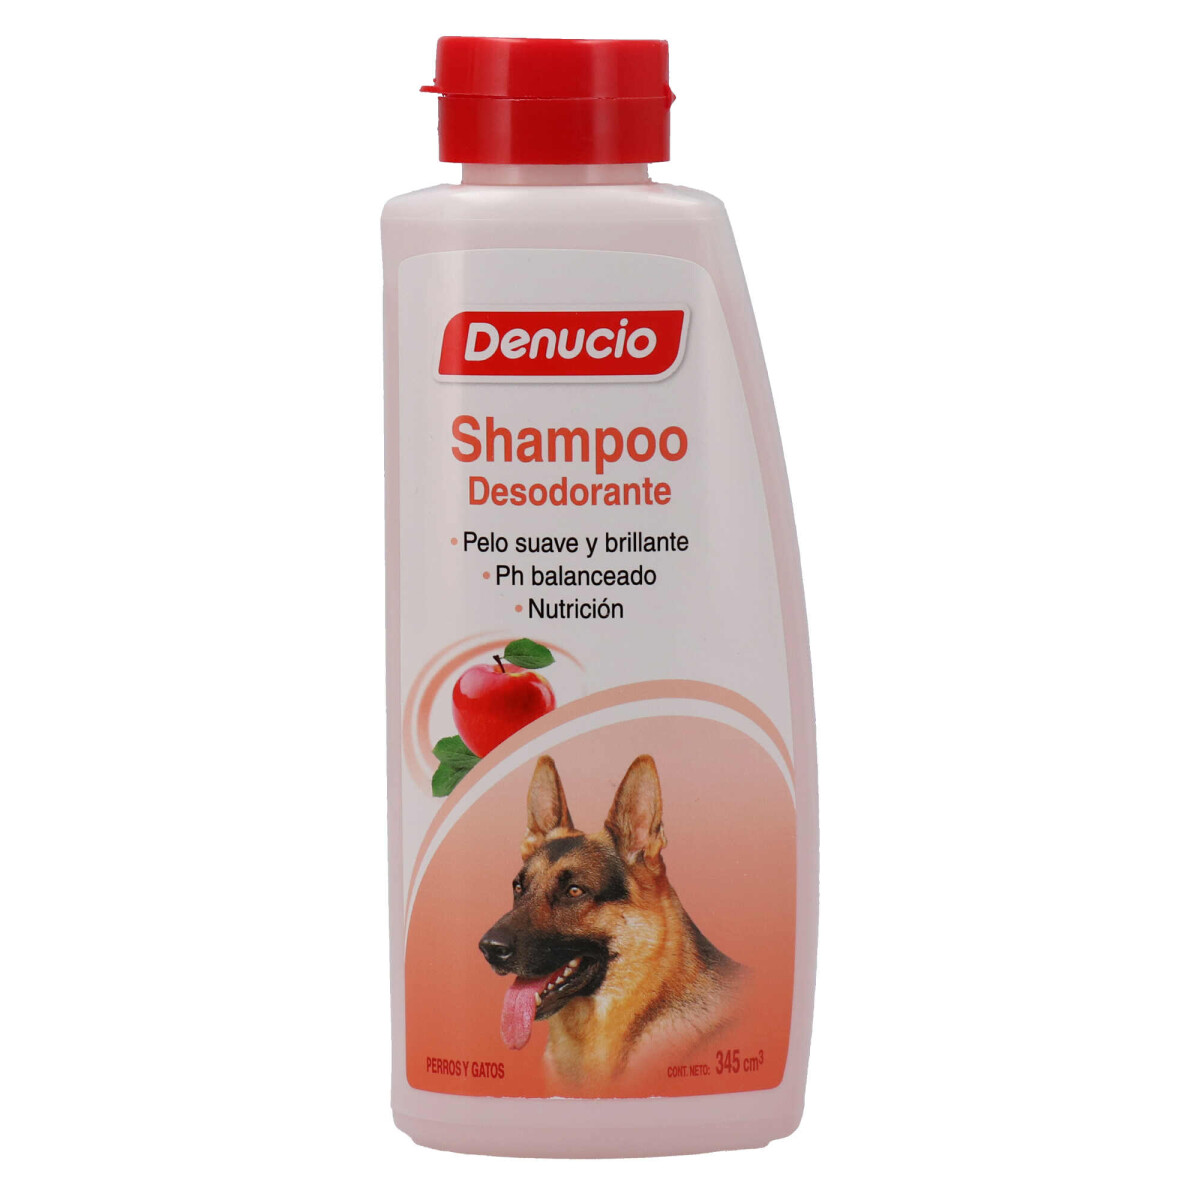 Denucio Shampoo Desodorante - 345cc 